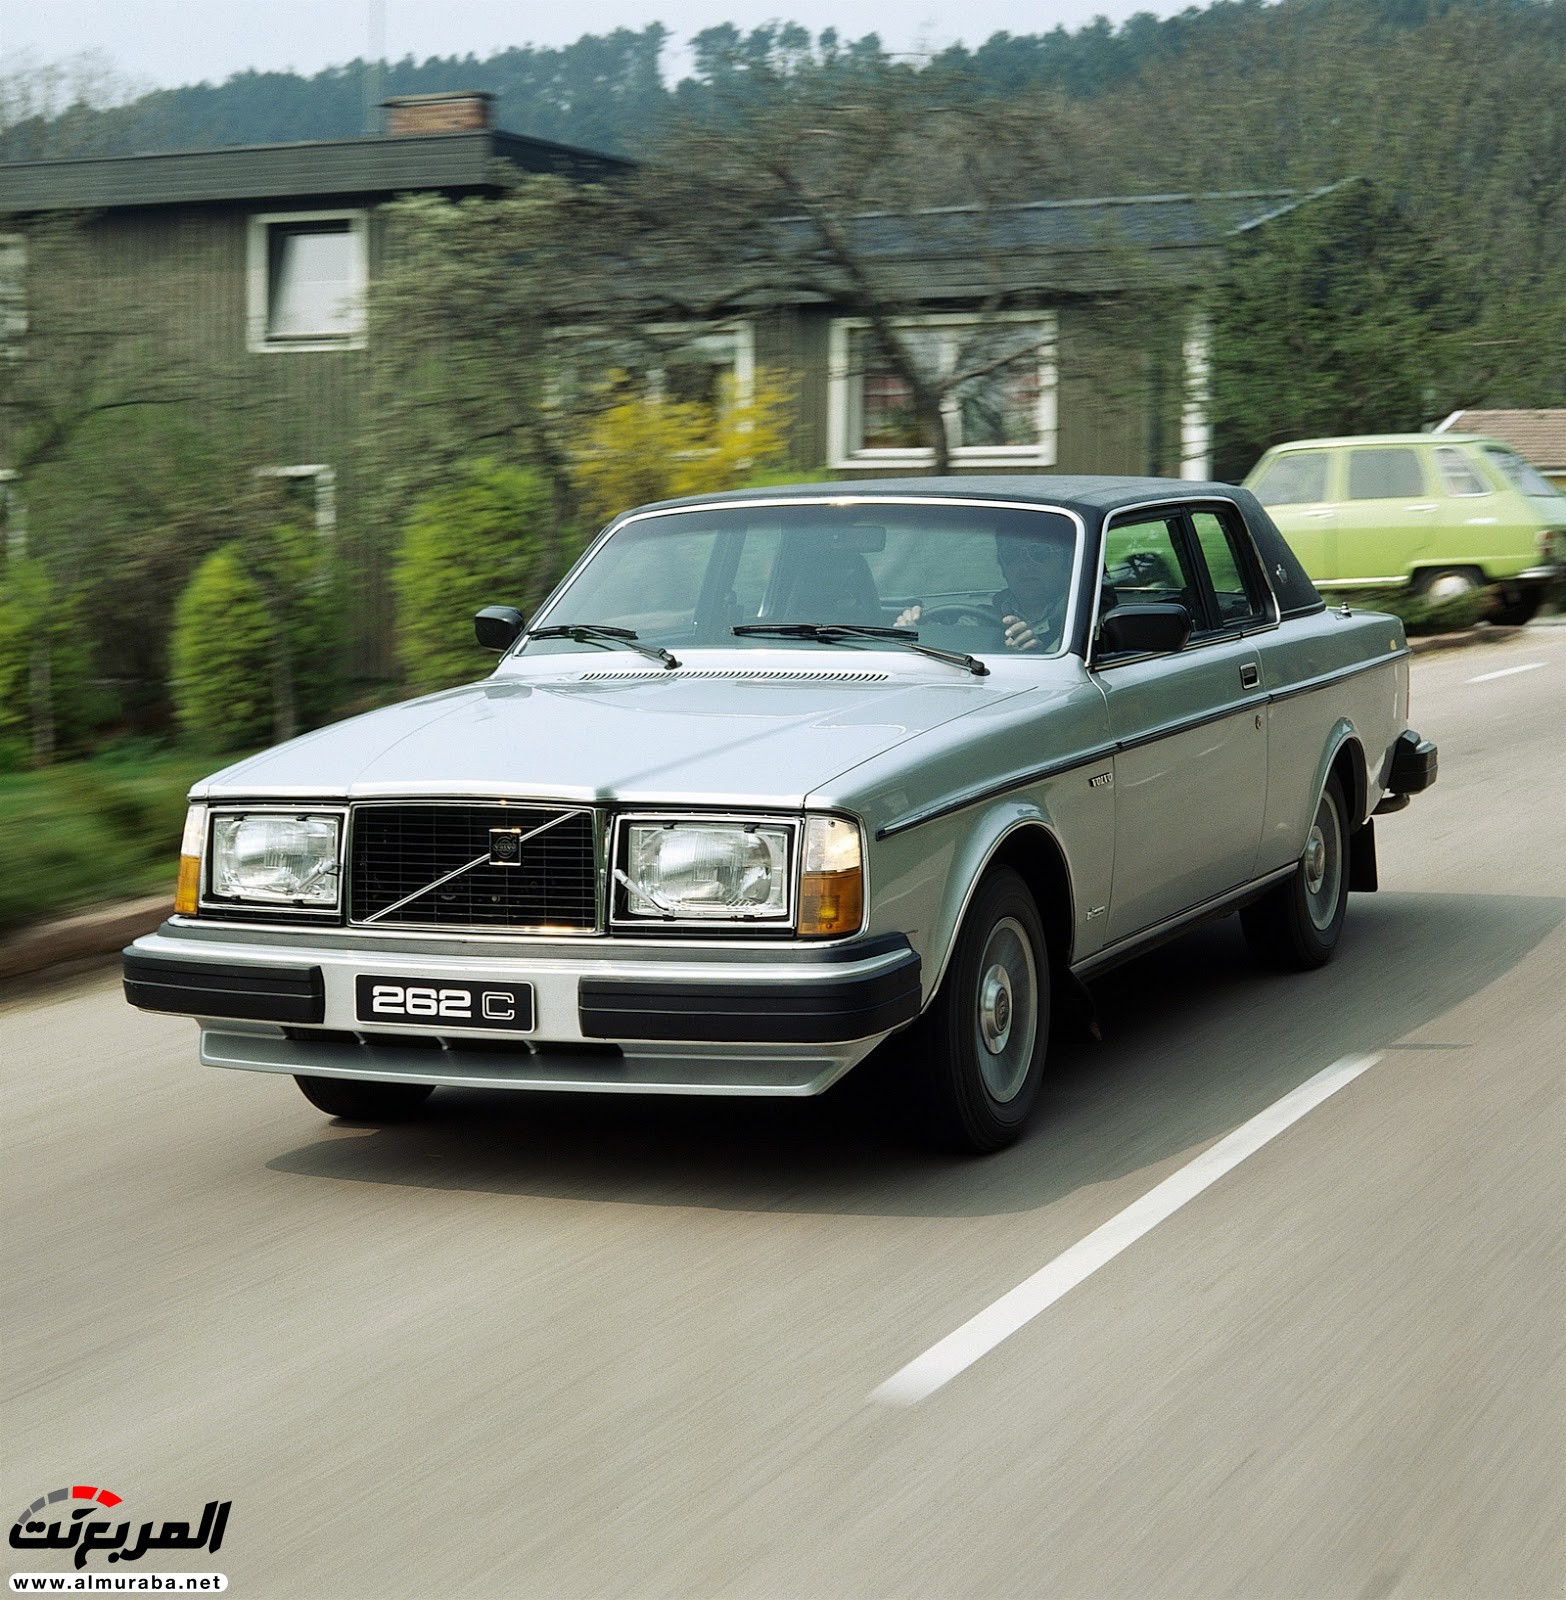 ذكرى مرور أربعين عام على طرح "فولفو" 262C الكوبيه Volvo 32